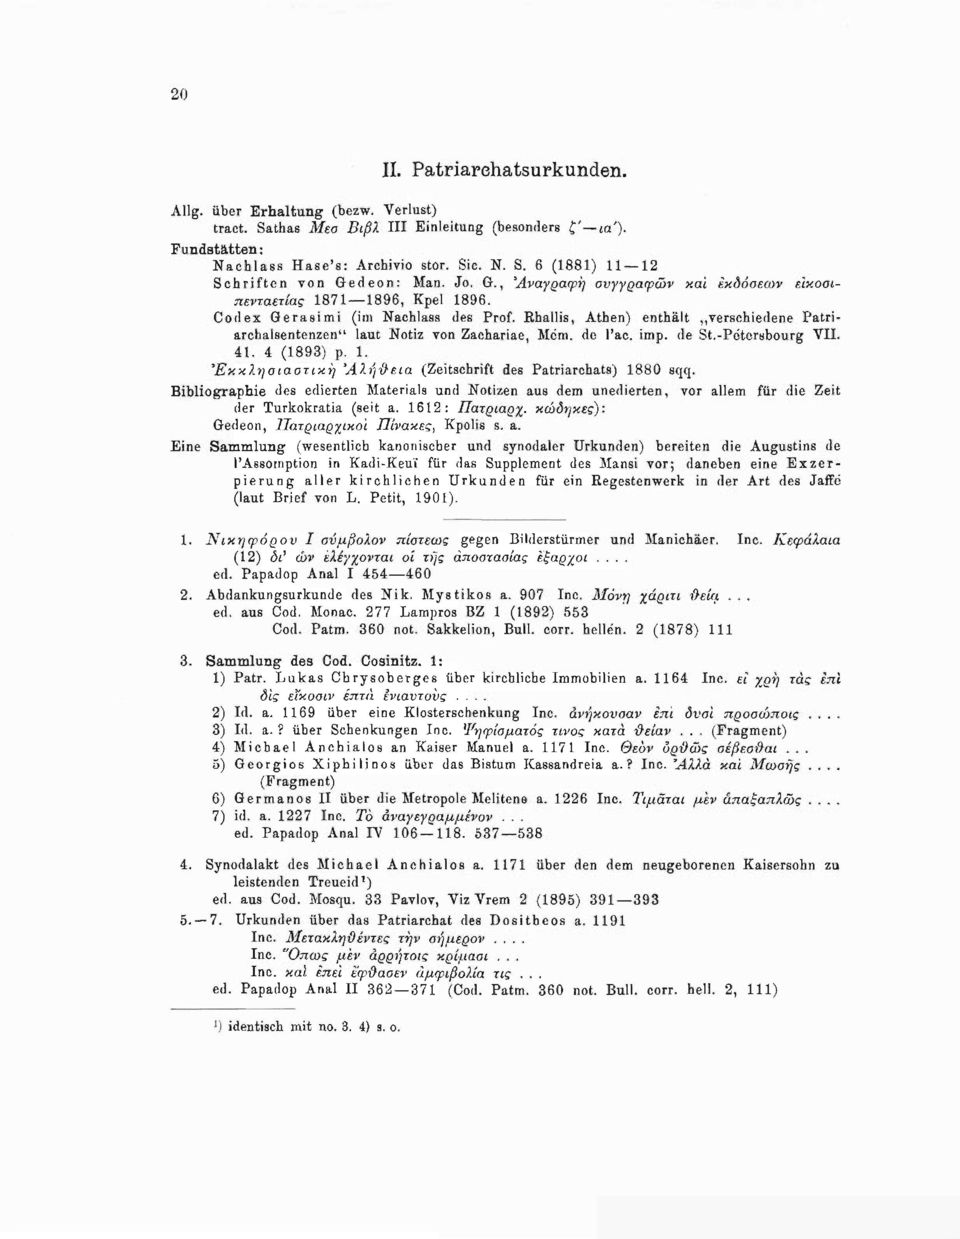 Rhallis, Athen) enthält verschiedene Patriarchalsentenzen" laut Notiz von Zachariae, Mem. de l'ac. imp. de St.-Petersbourg VII. 41. 4 (1893) ρ. 1.